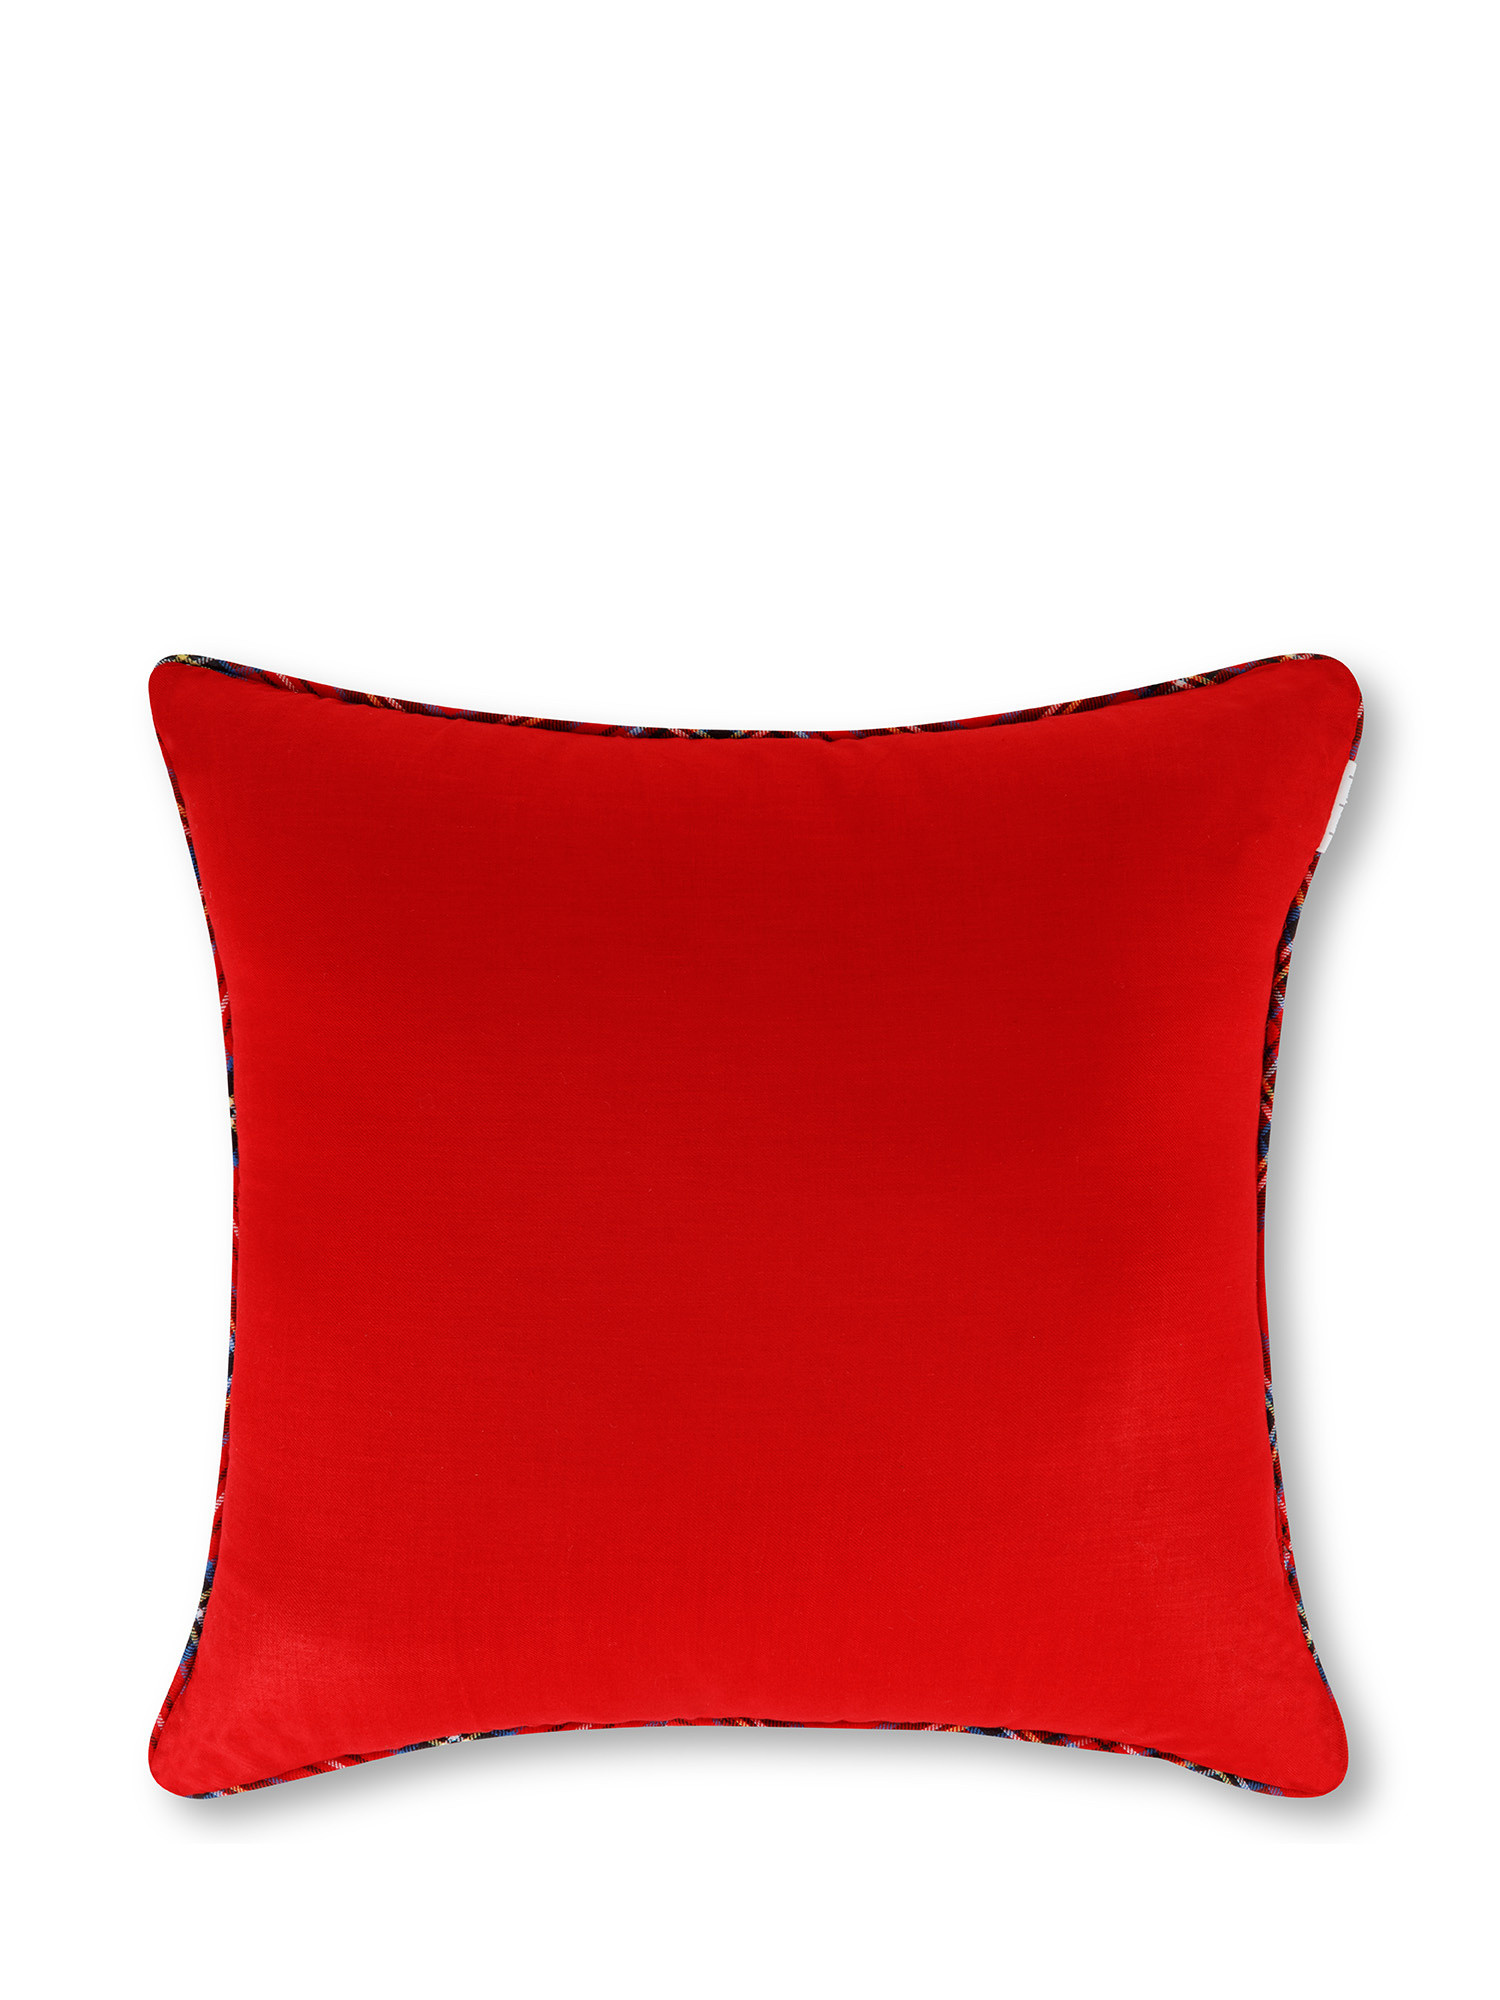 Warm tartan cotton pillow, Red, large image number 1